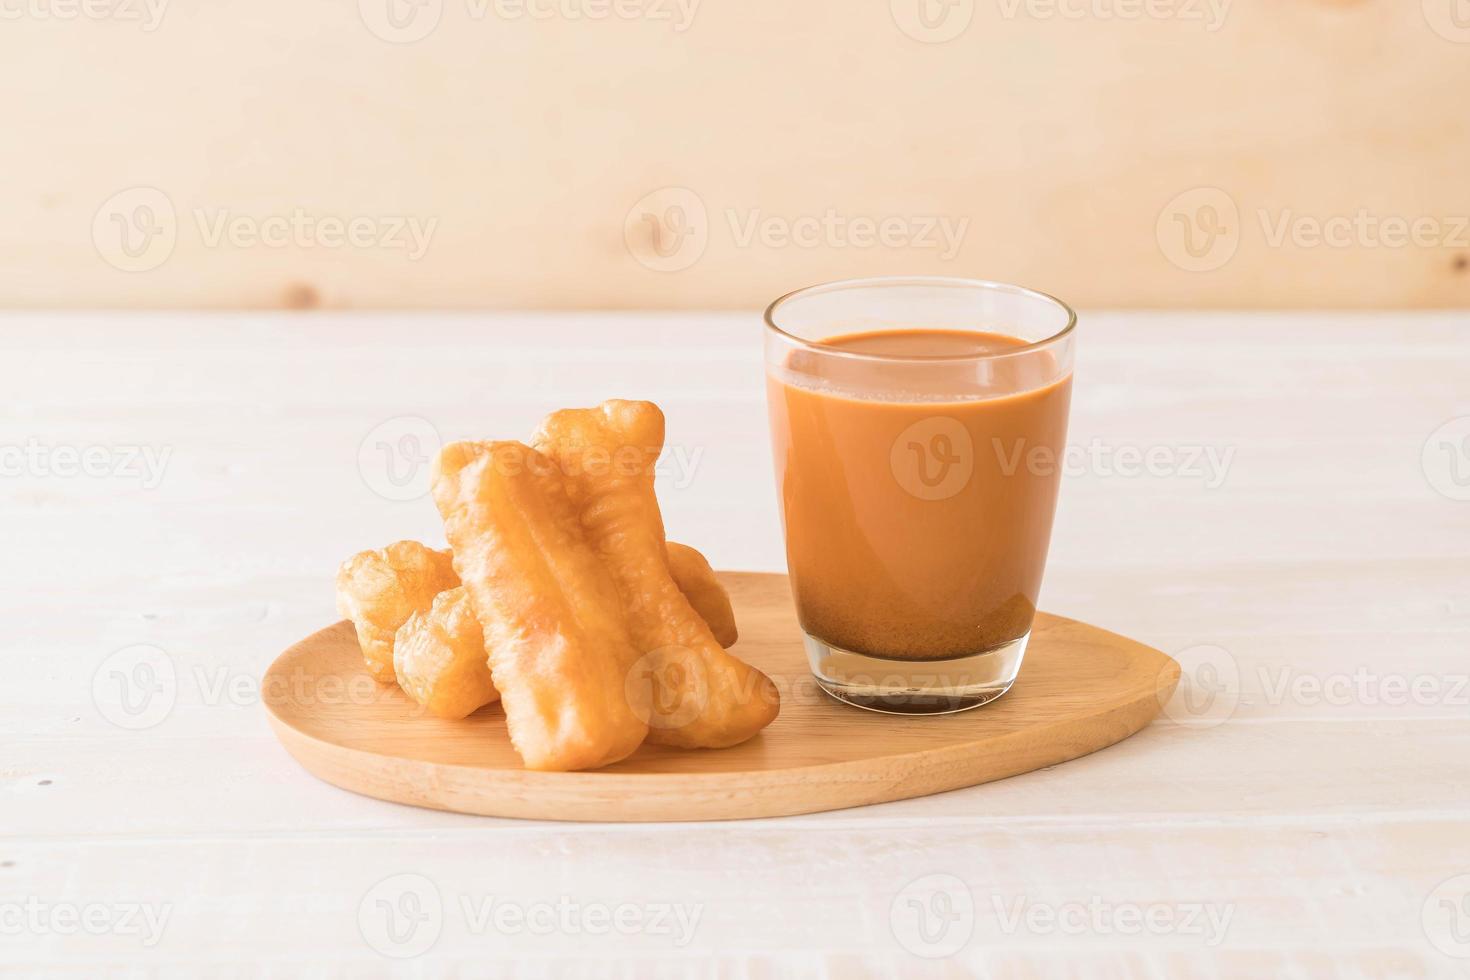 bâton de pâte frit avec du thé au lait sur bois photo